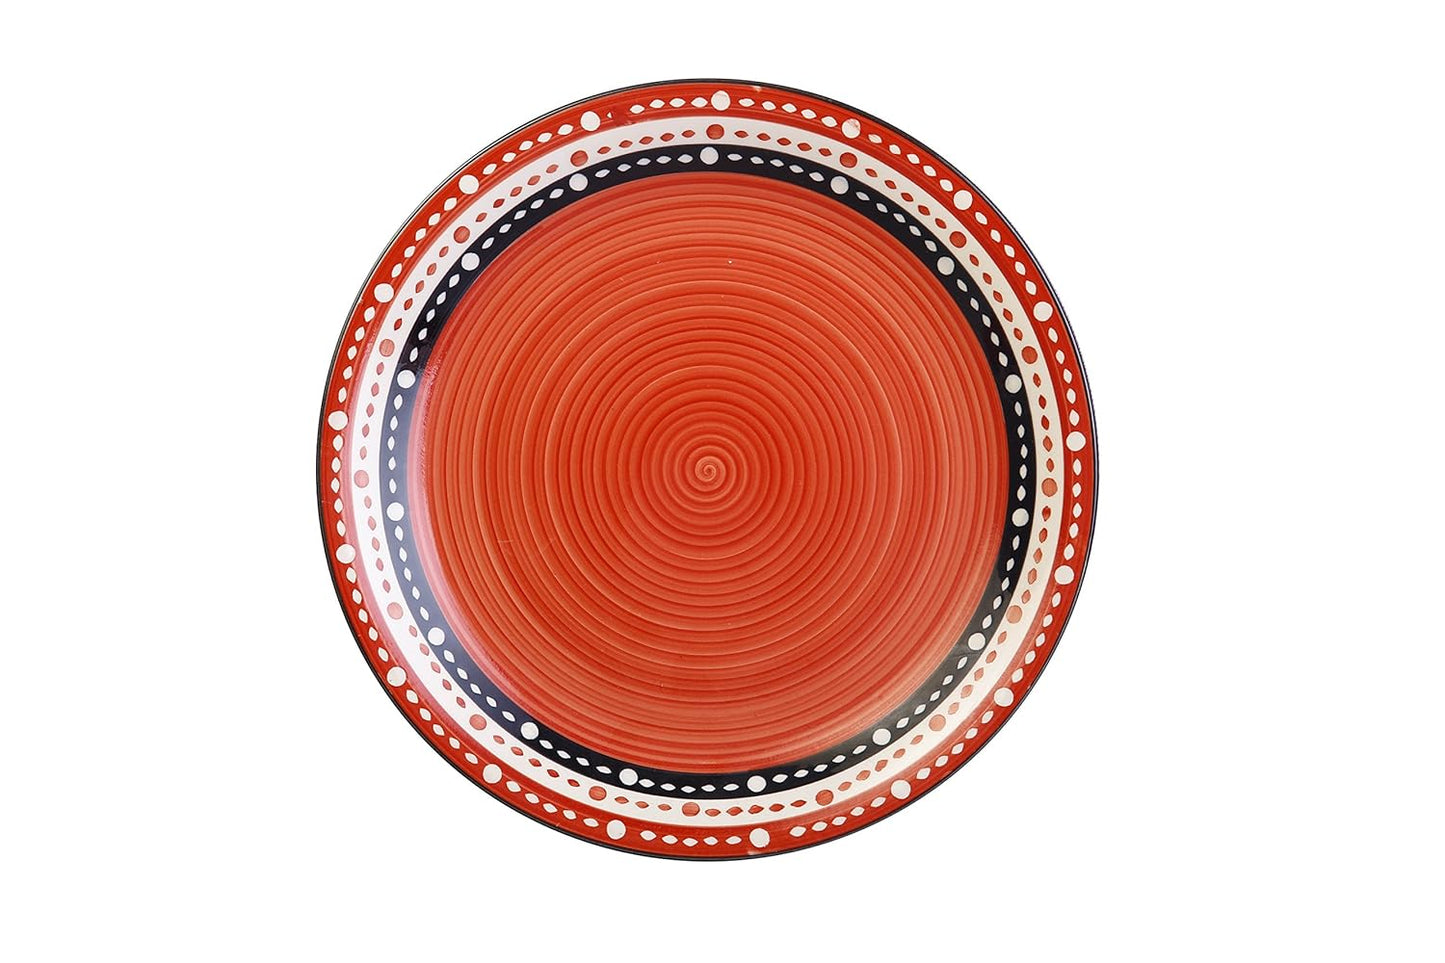 Caffeine Ceramic Handmade Red and Black Dotted Dinner Set (37 pieces - Microwave & Dishwasher Safe) - Caffeine Premium Stoneware